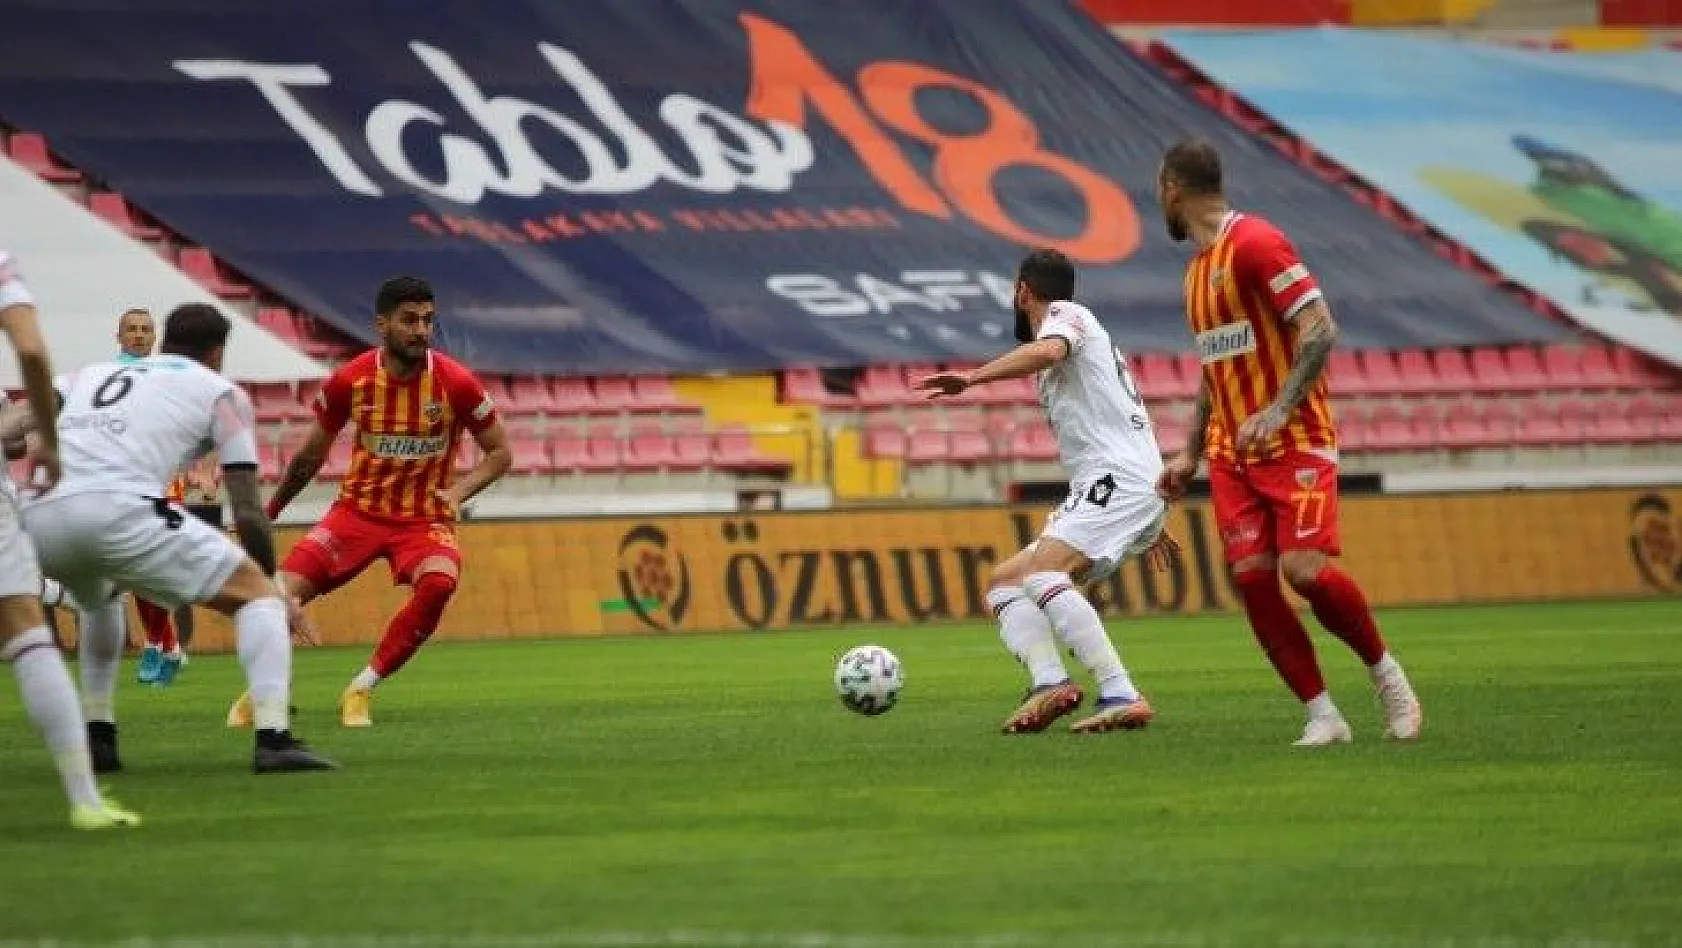 Süper Lig: Hes Kablo Kayserispor: 2 - Gençlerbirliği SK: 2 (Maç sonucu)